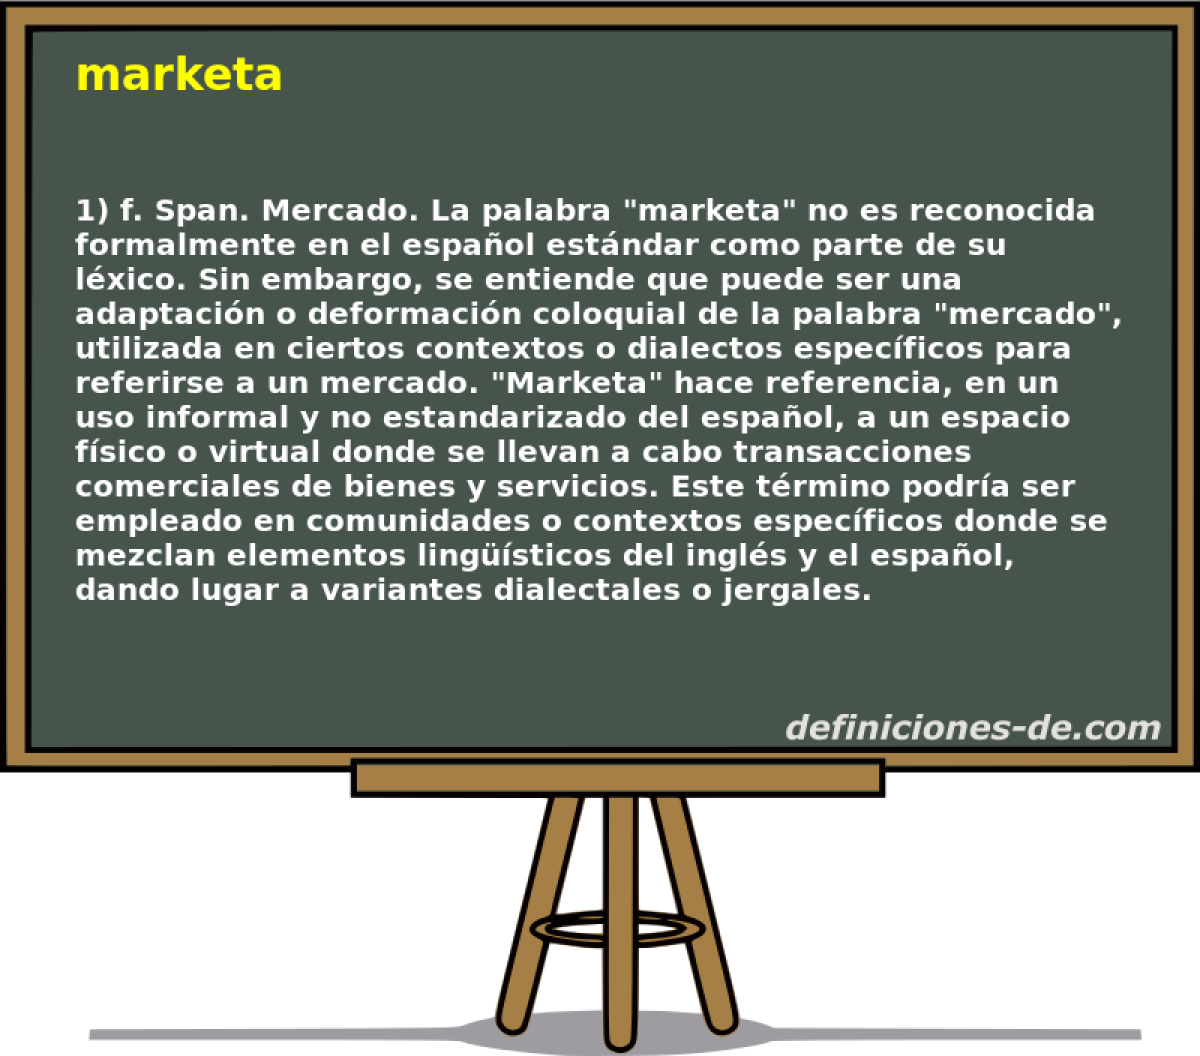 marketa 